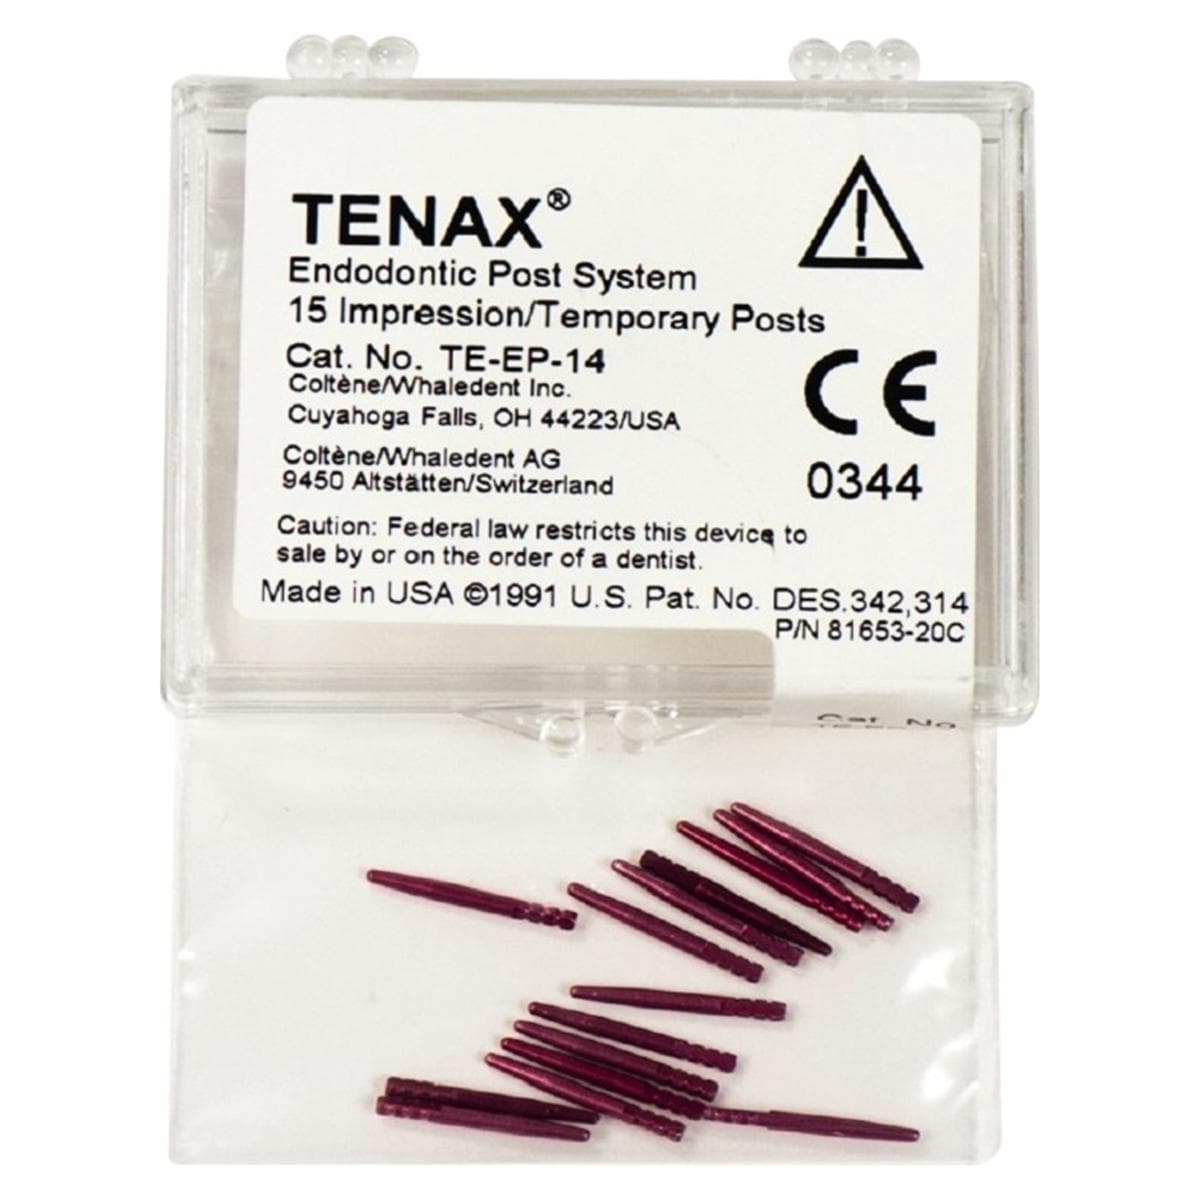 Tenax Afdrukstiften - Te-EP-14 rood,  1,4 mm -